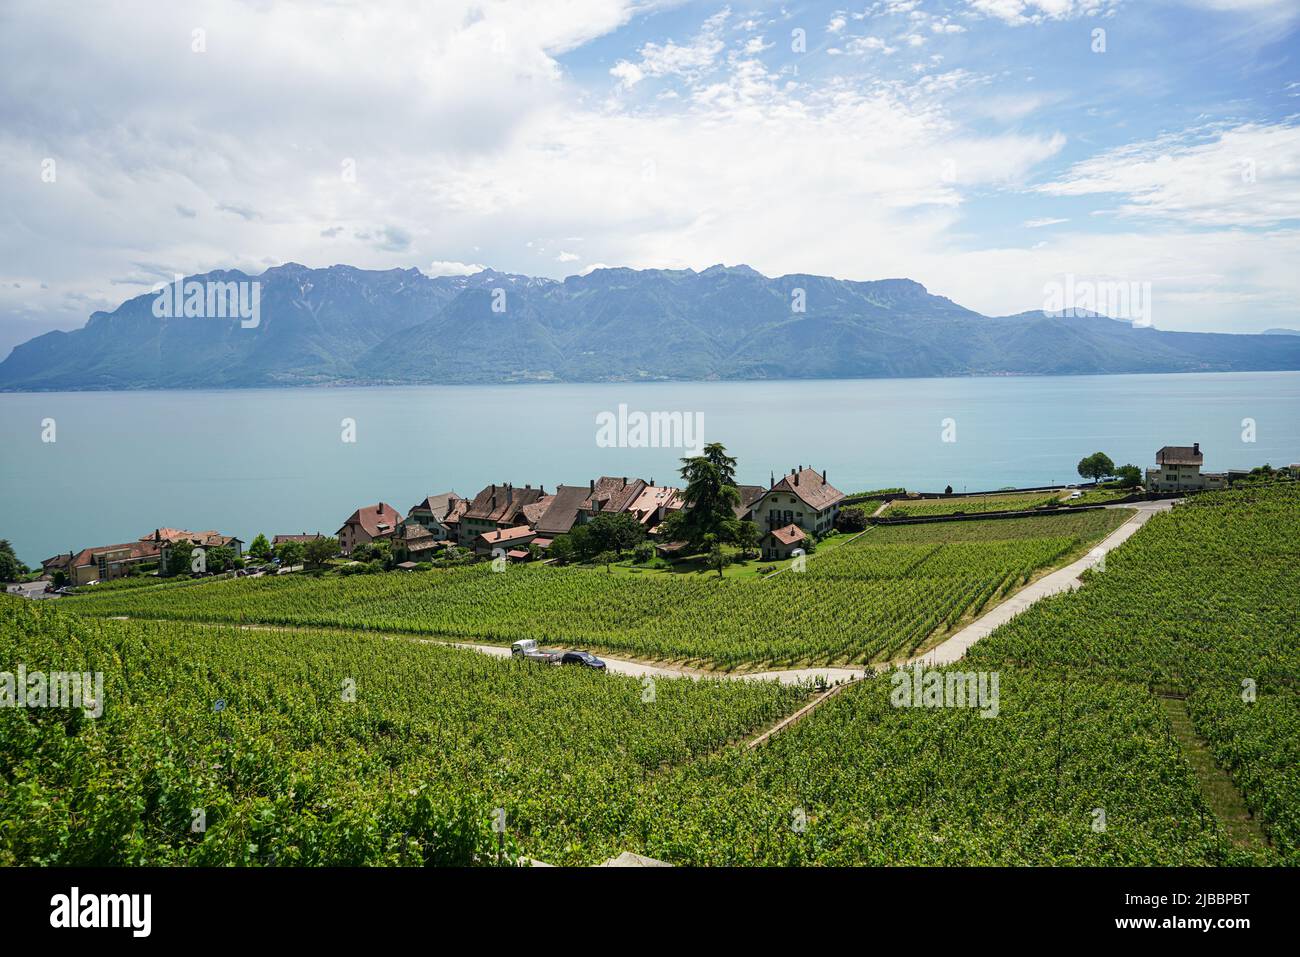 Lavaux, avec ses terrasses couvertes de vignobles surplombant le lac Léman, est l'une des régions viticoles les plus connues et les plus fascinantes de Suisse Banque D'Images